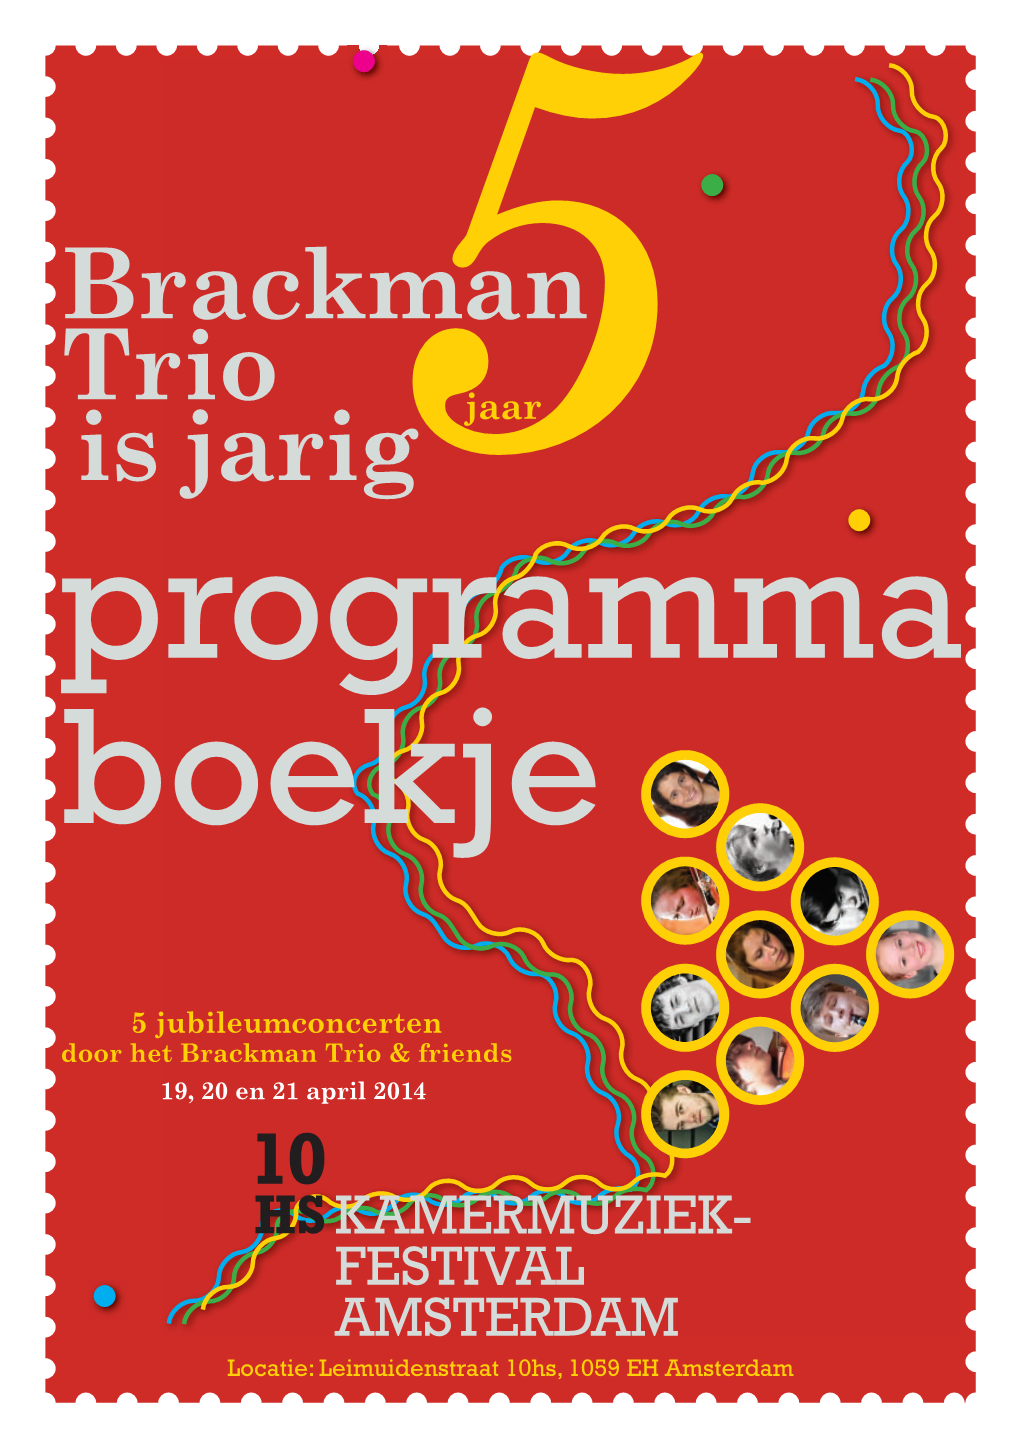 Brackman Trio Is Jarig5jaar Programma Boekje